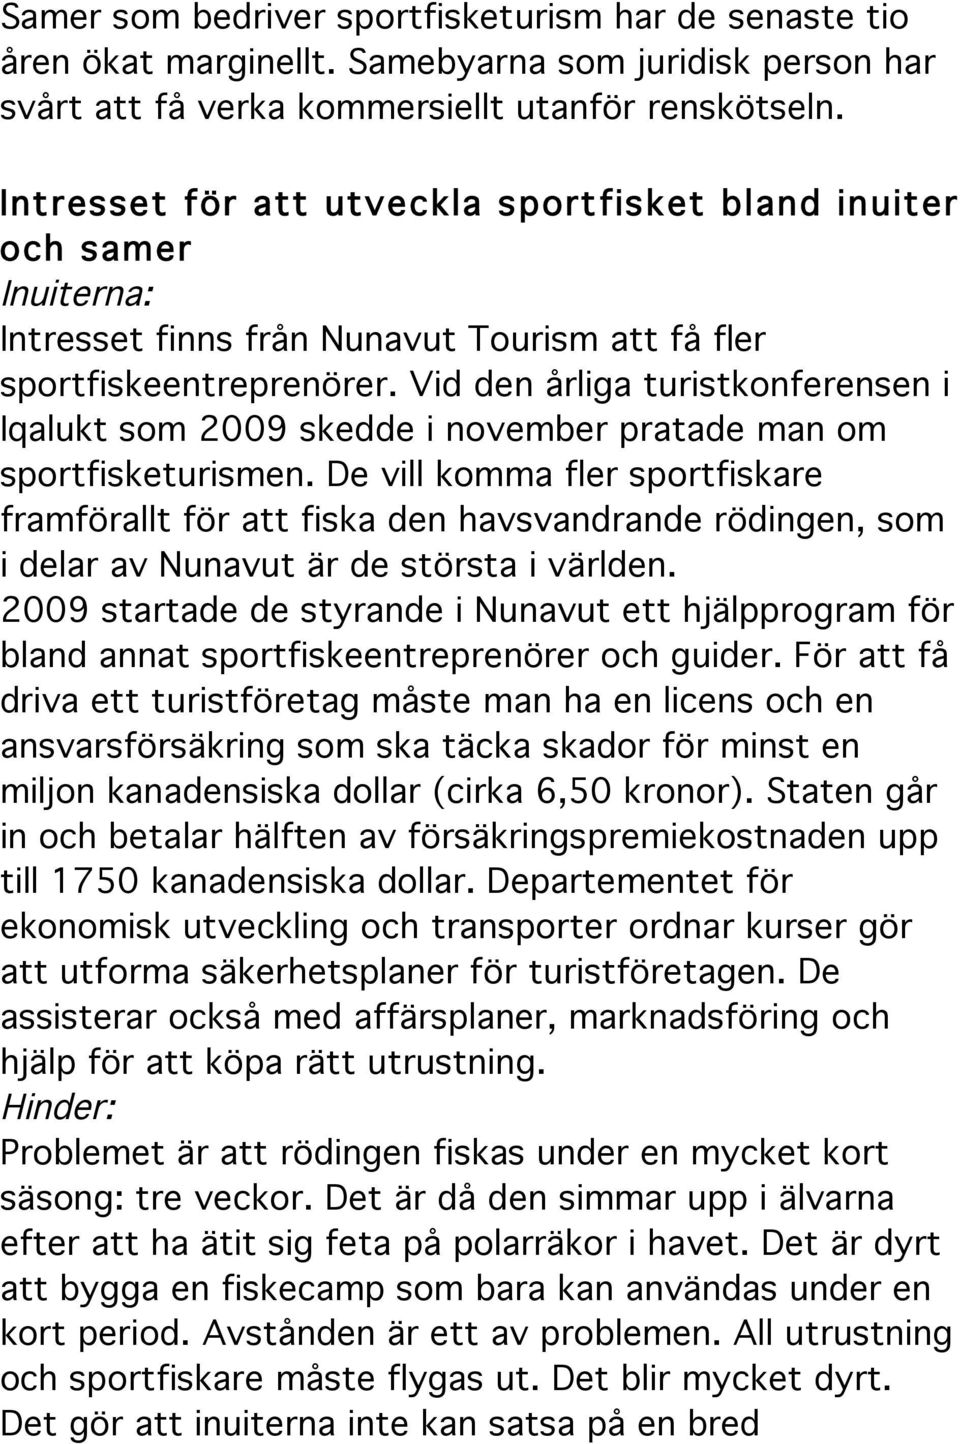 Vid den årliga turistkonferensen i Iqalukt som 2009 skedde i november pratade man om sportfisketurismen.